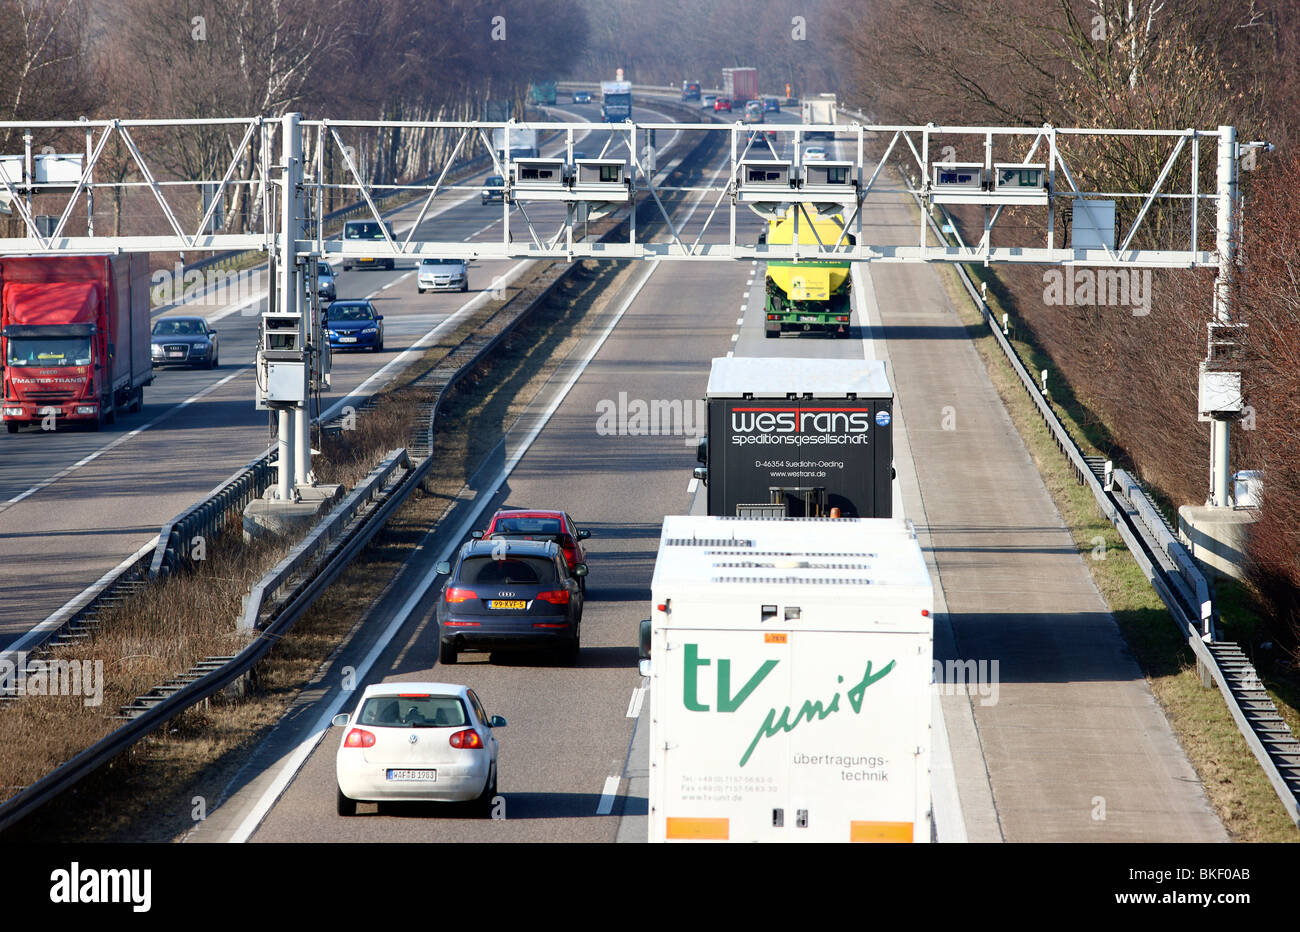 Puente de peaje de una autopista en Alemania. Detectores en el puente registrar todos los camiones, los cuales tienen que pagar peaje en las autopistas alemanas. Foto de stock